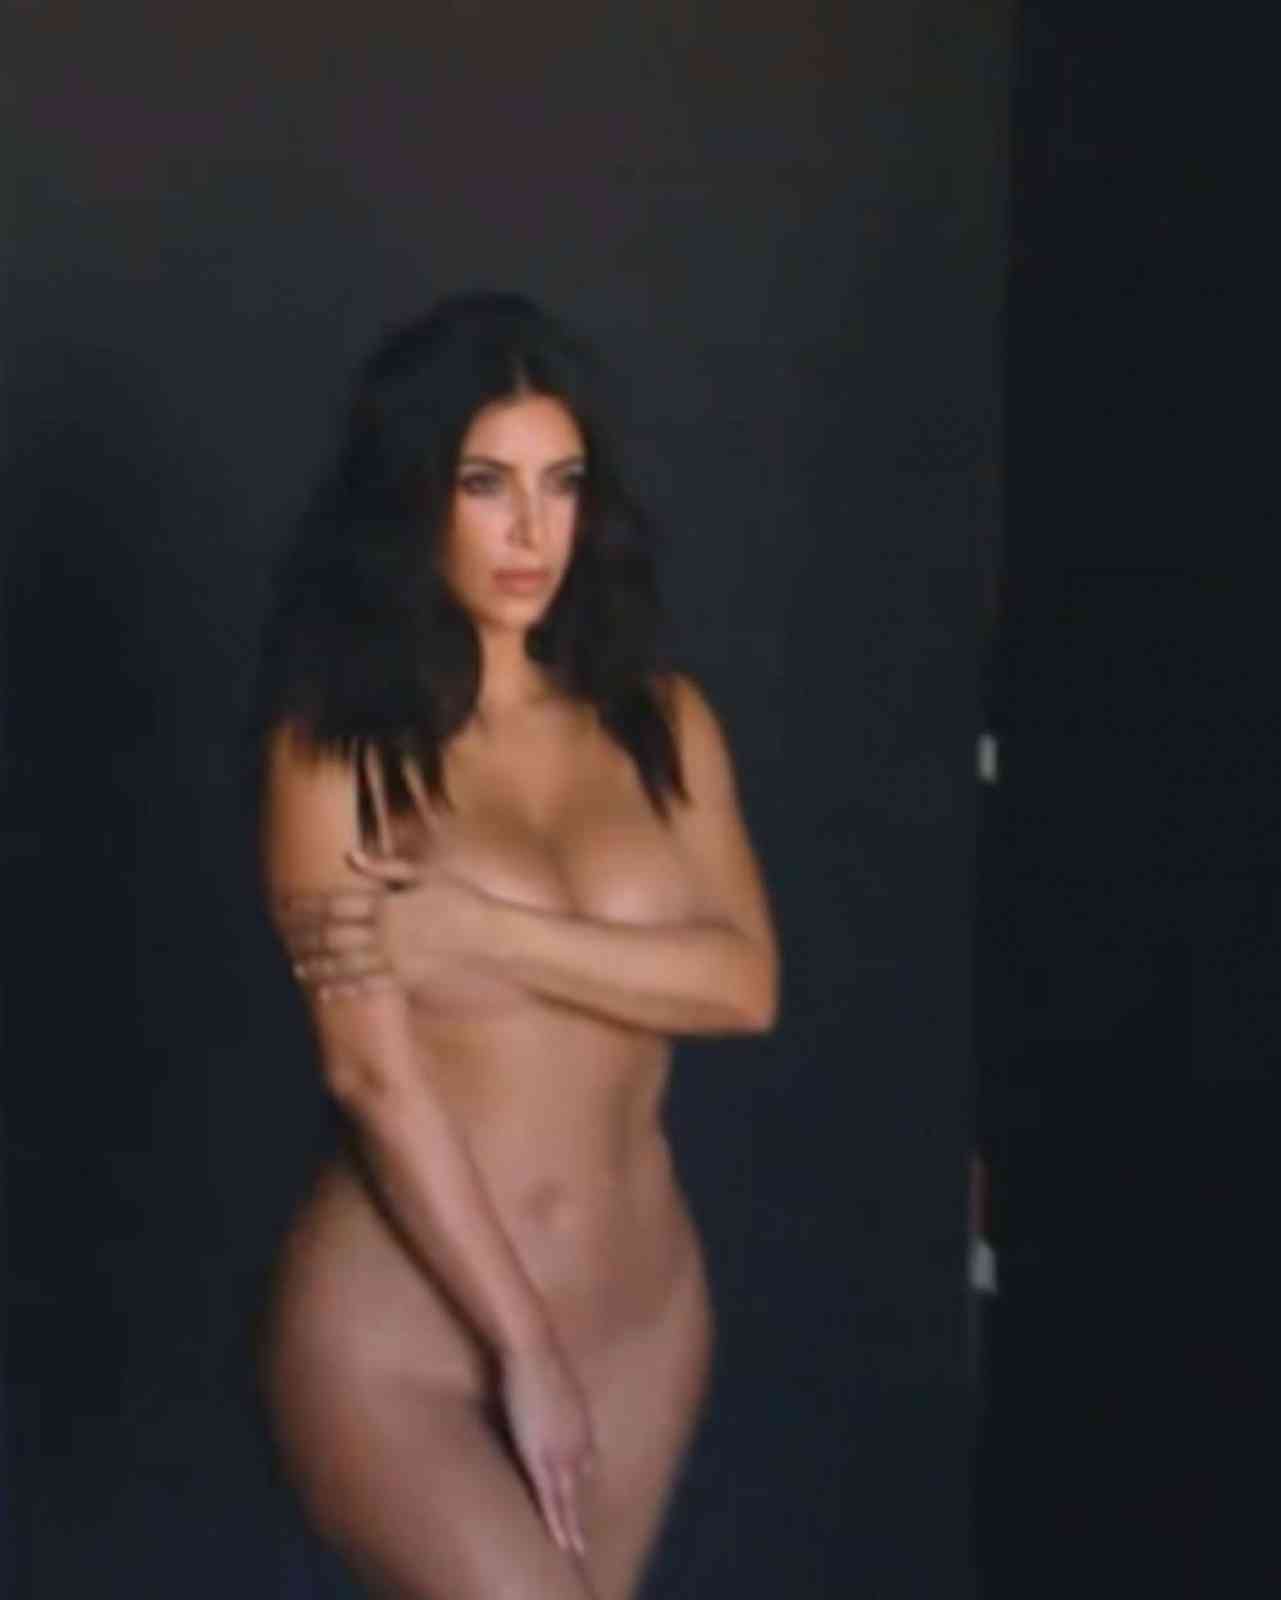 Kim Kardashian West Nude